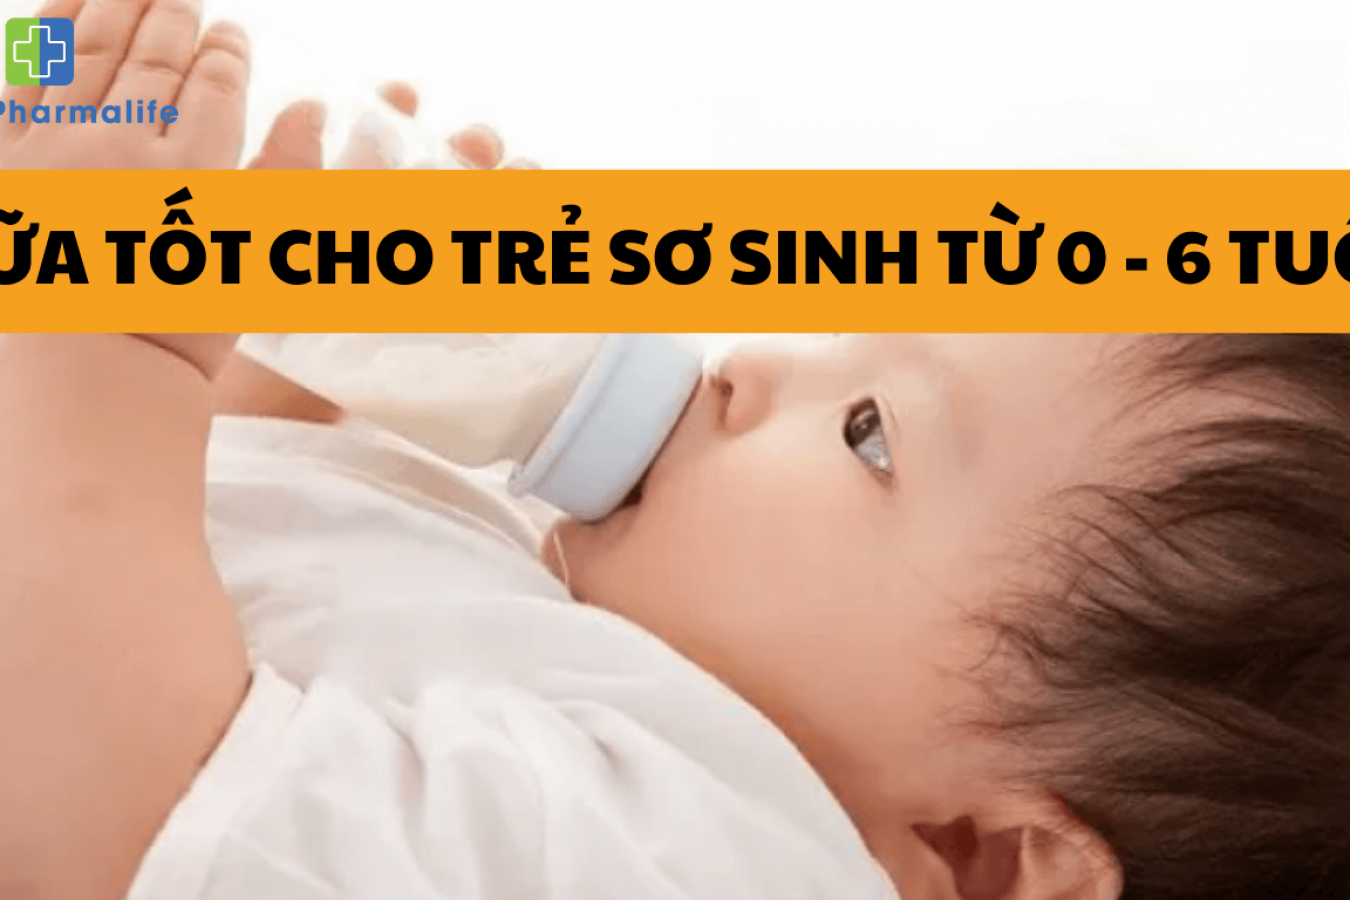 Điểm danh 7 dòng sữa tốt cho trẻ sơ sinh từ 0 - 6 tháng tuổi